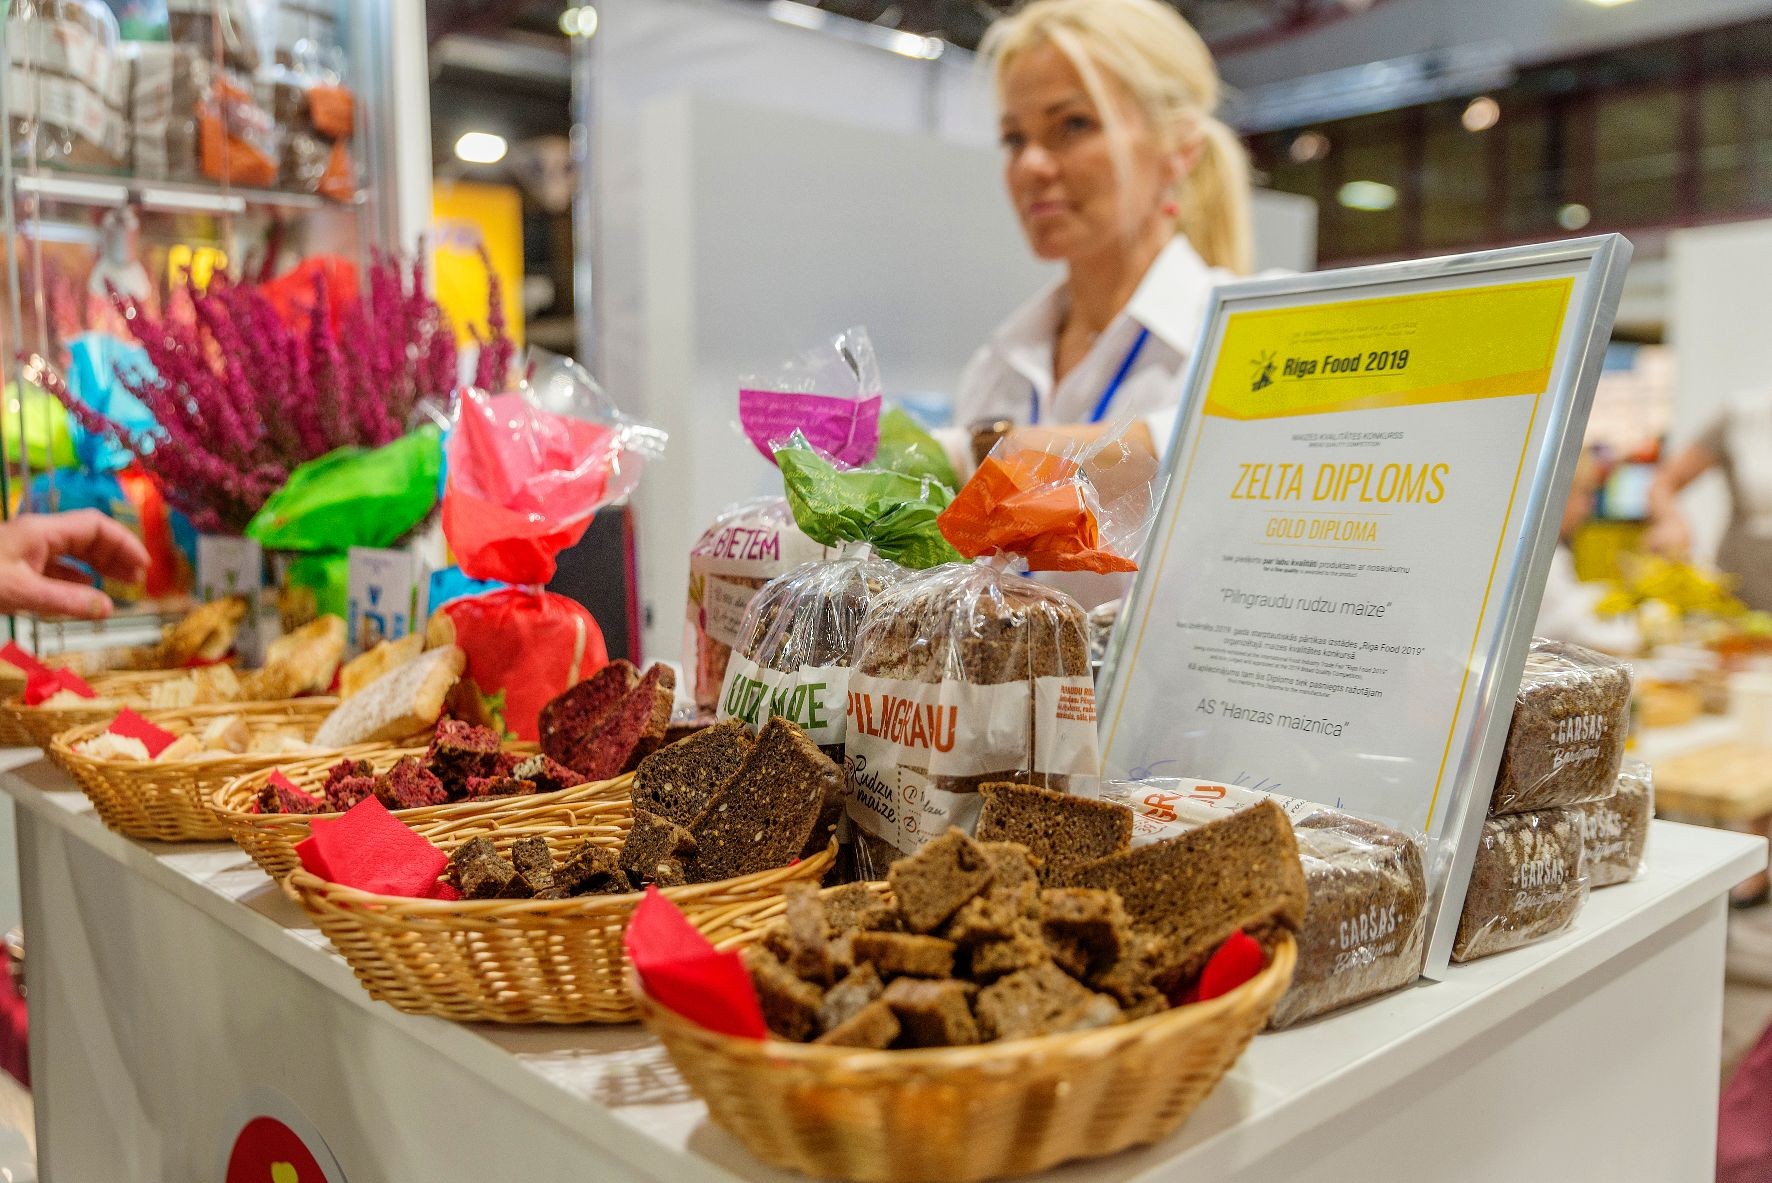 Veselīgs un inovatīvs! Latvijas gardumi un jaunumi krāšņajā izstādē Riga Food 2020 Ķīpsalā (Bilde 4)